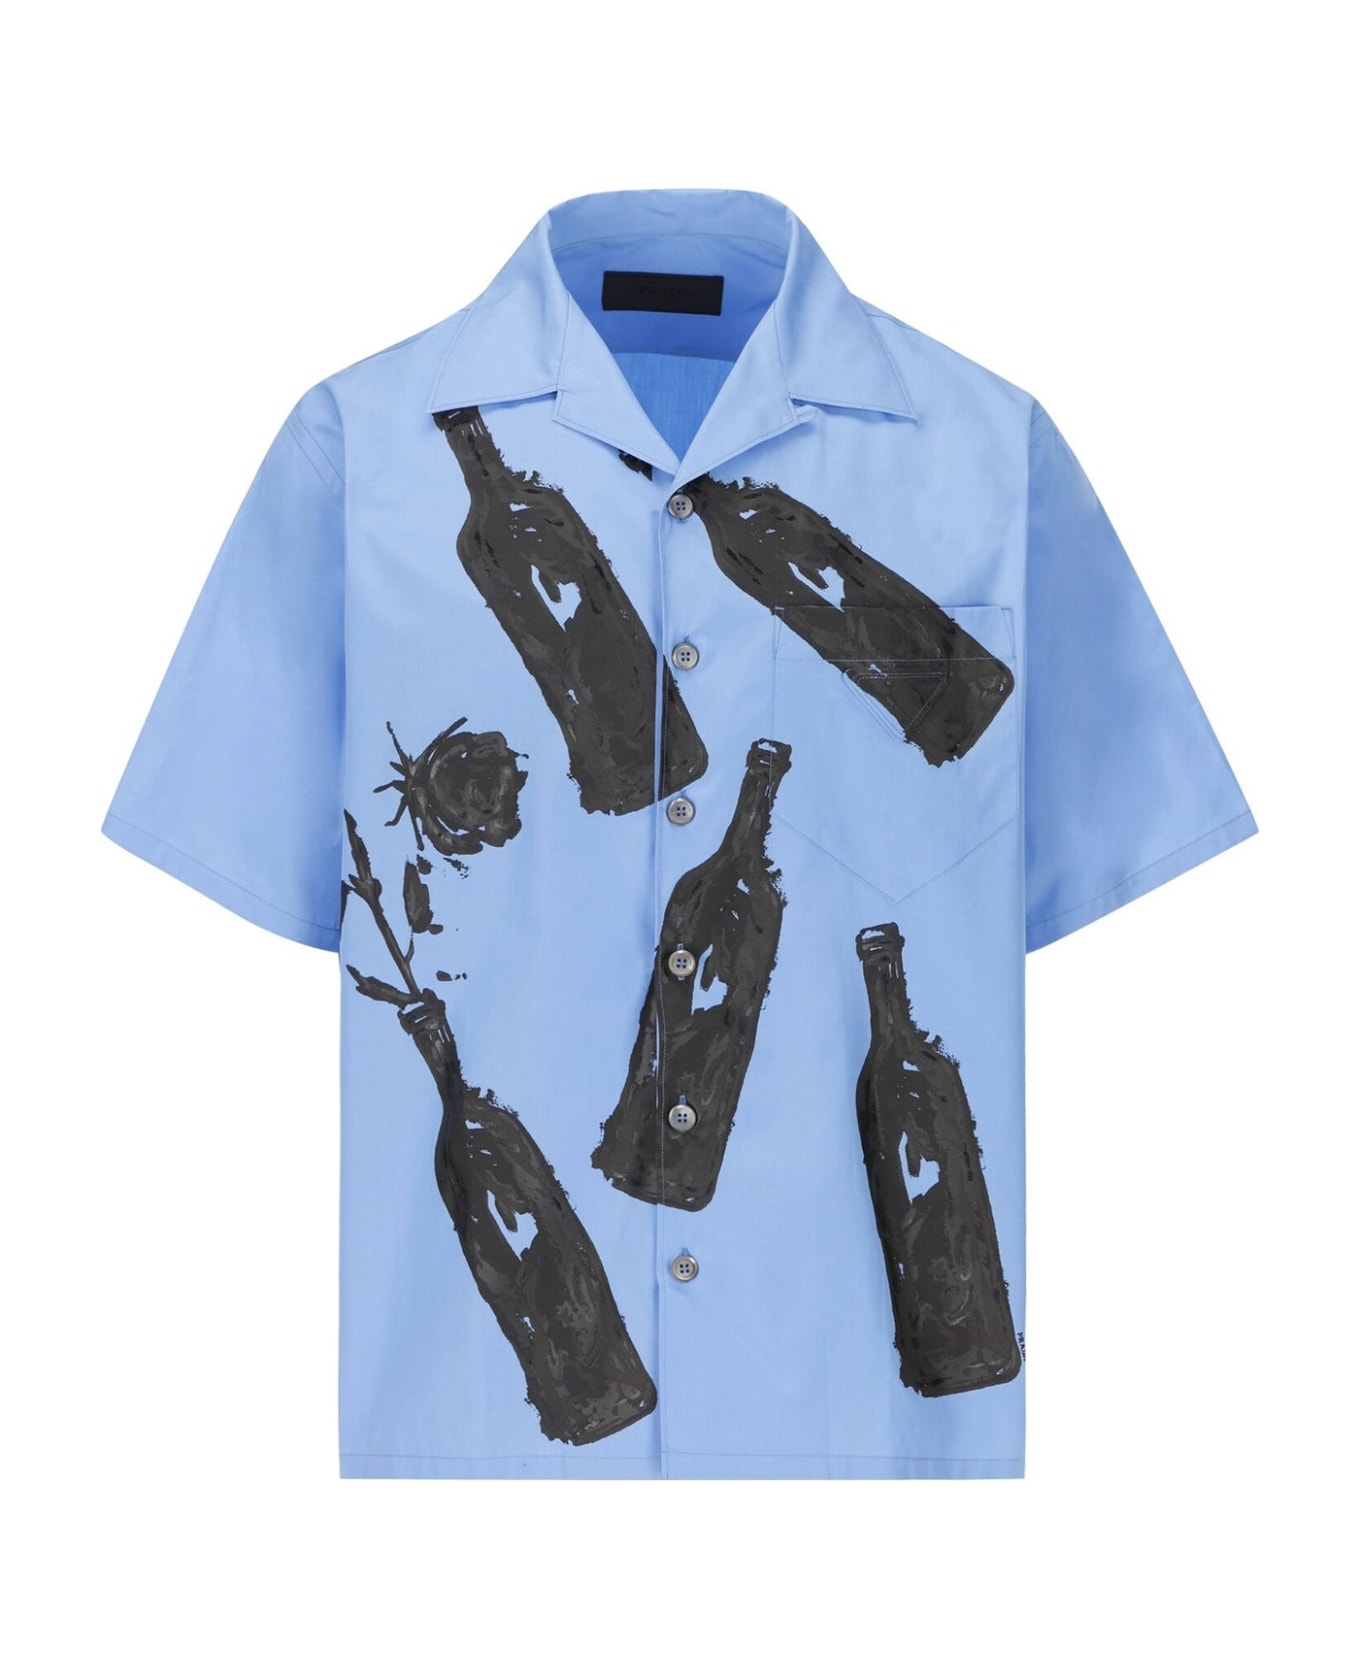 Prada Printed Cotton Shirt - Blue